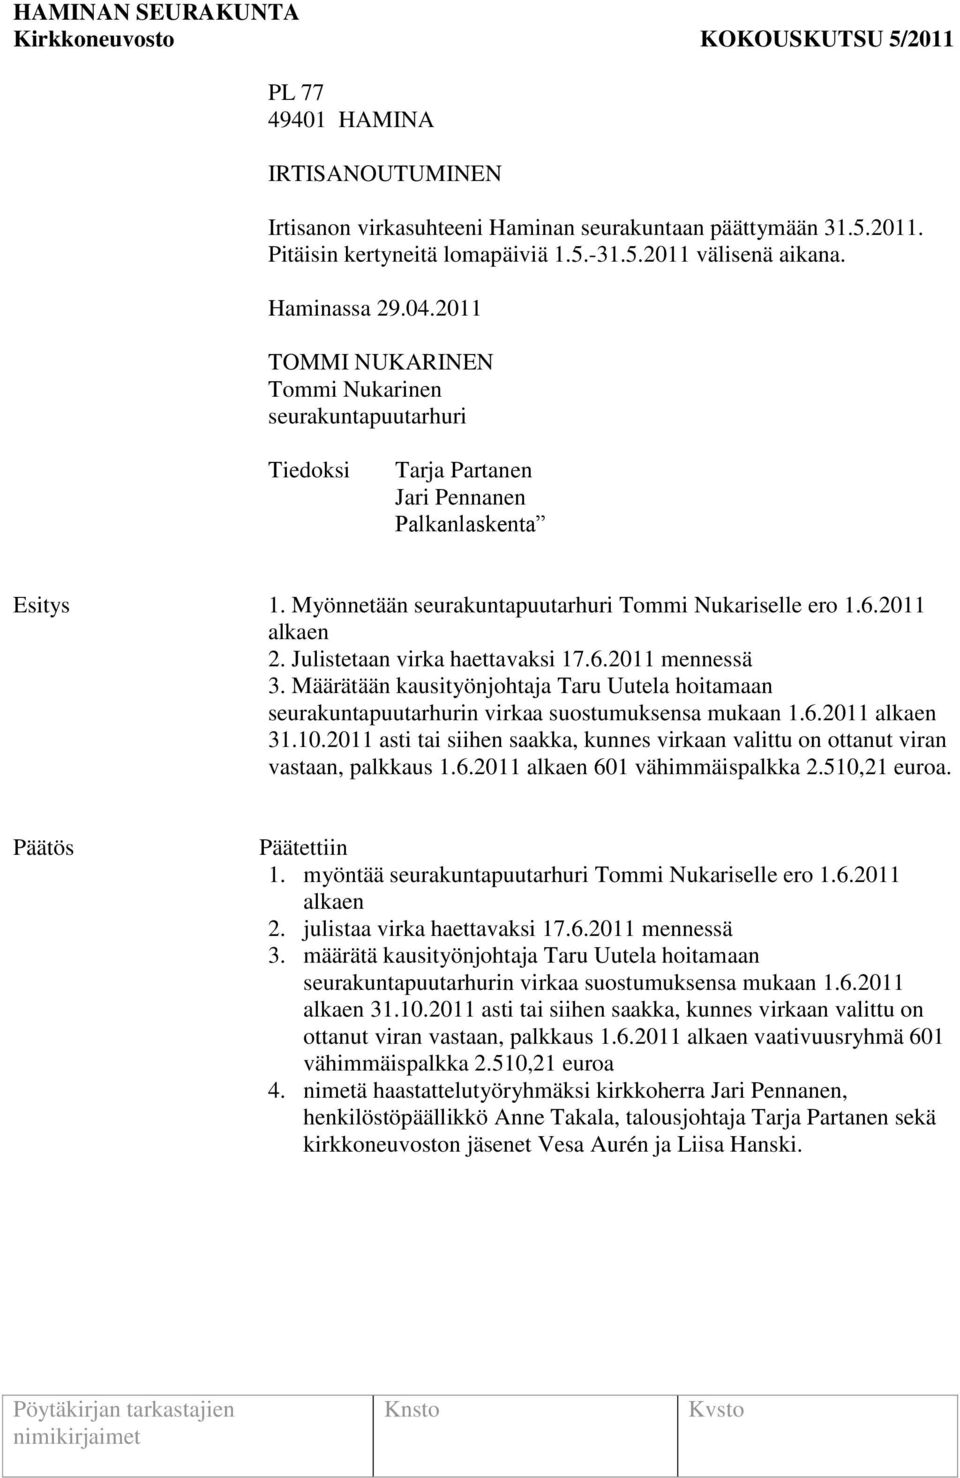 Julistetaan virka haettavaksi 17.6.2011 mennessä 3. Määrätään kausityönjohtaja Taru Uutela hoitamaan seurakuntapuutarhurin virkaa suostumuksensa mukaan 1.6.2011 alkaen 31.10.